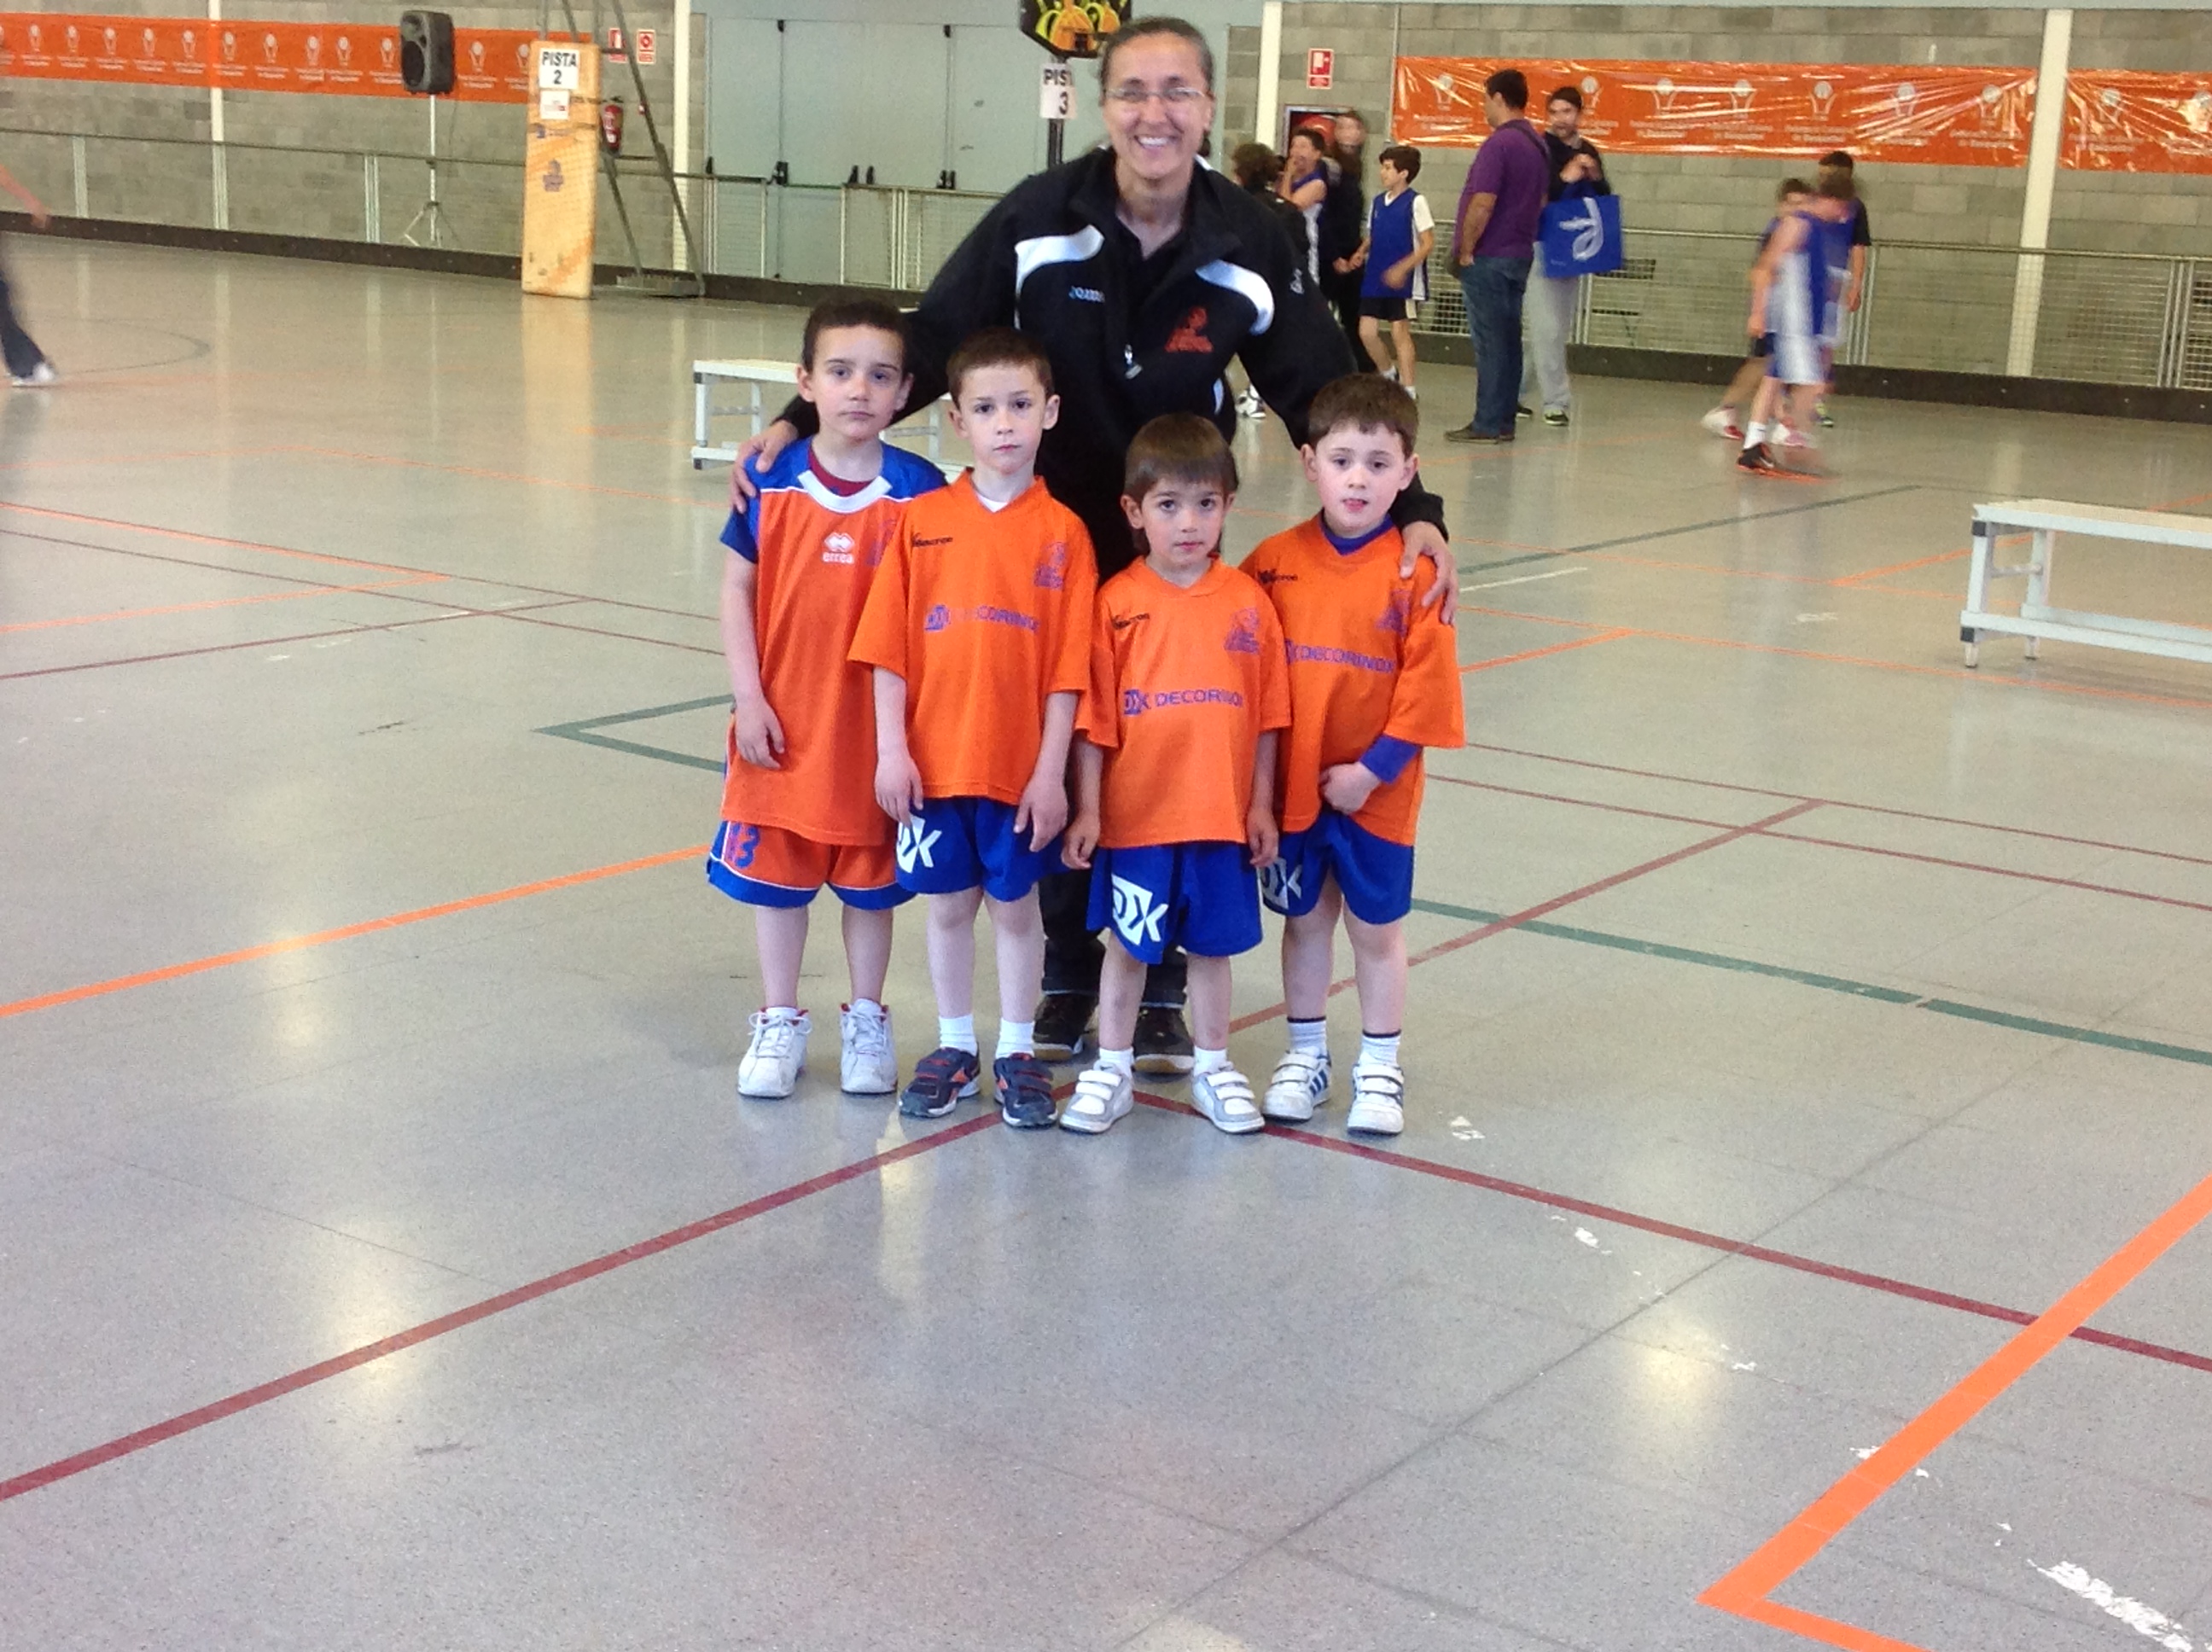 Trobada Final Escoles de Bàsquet 2014 La Seu d'Urgell